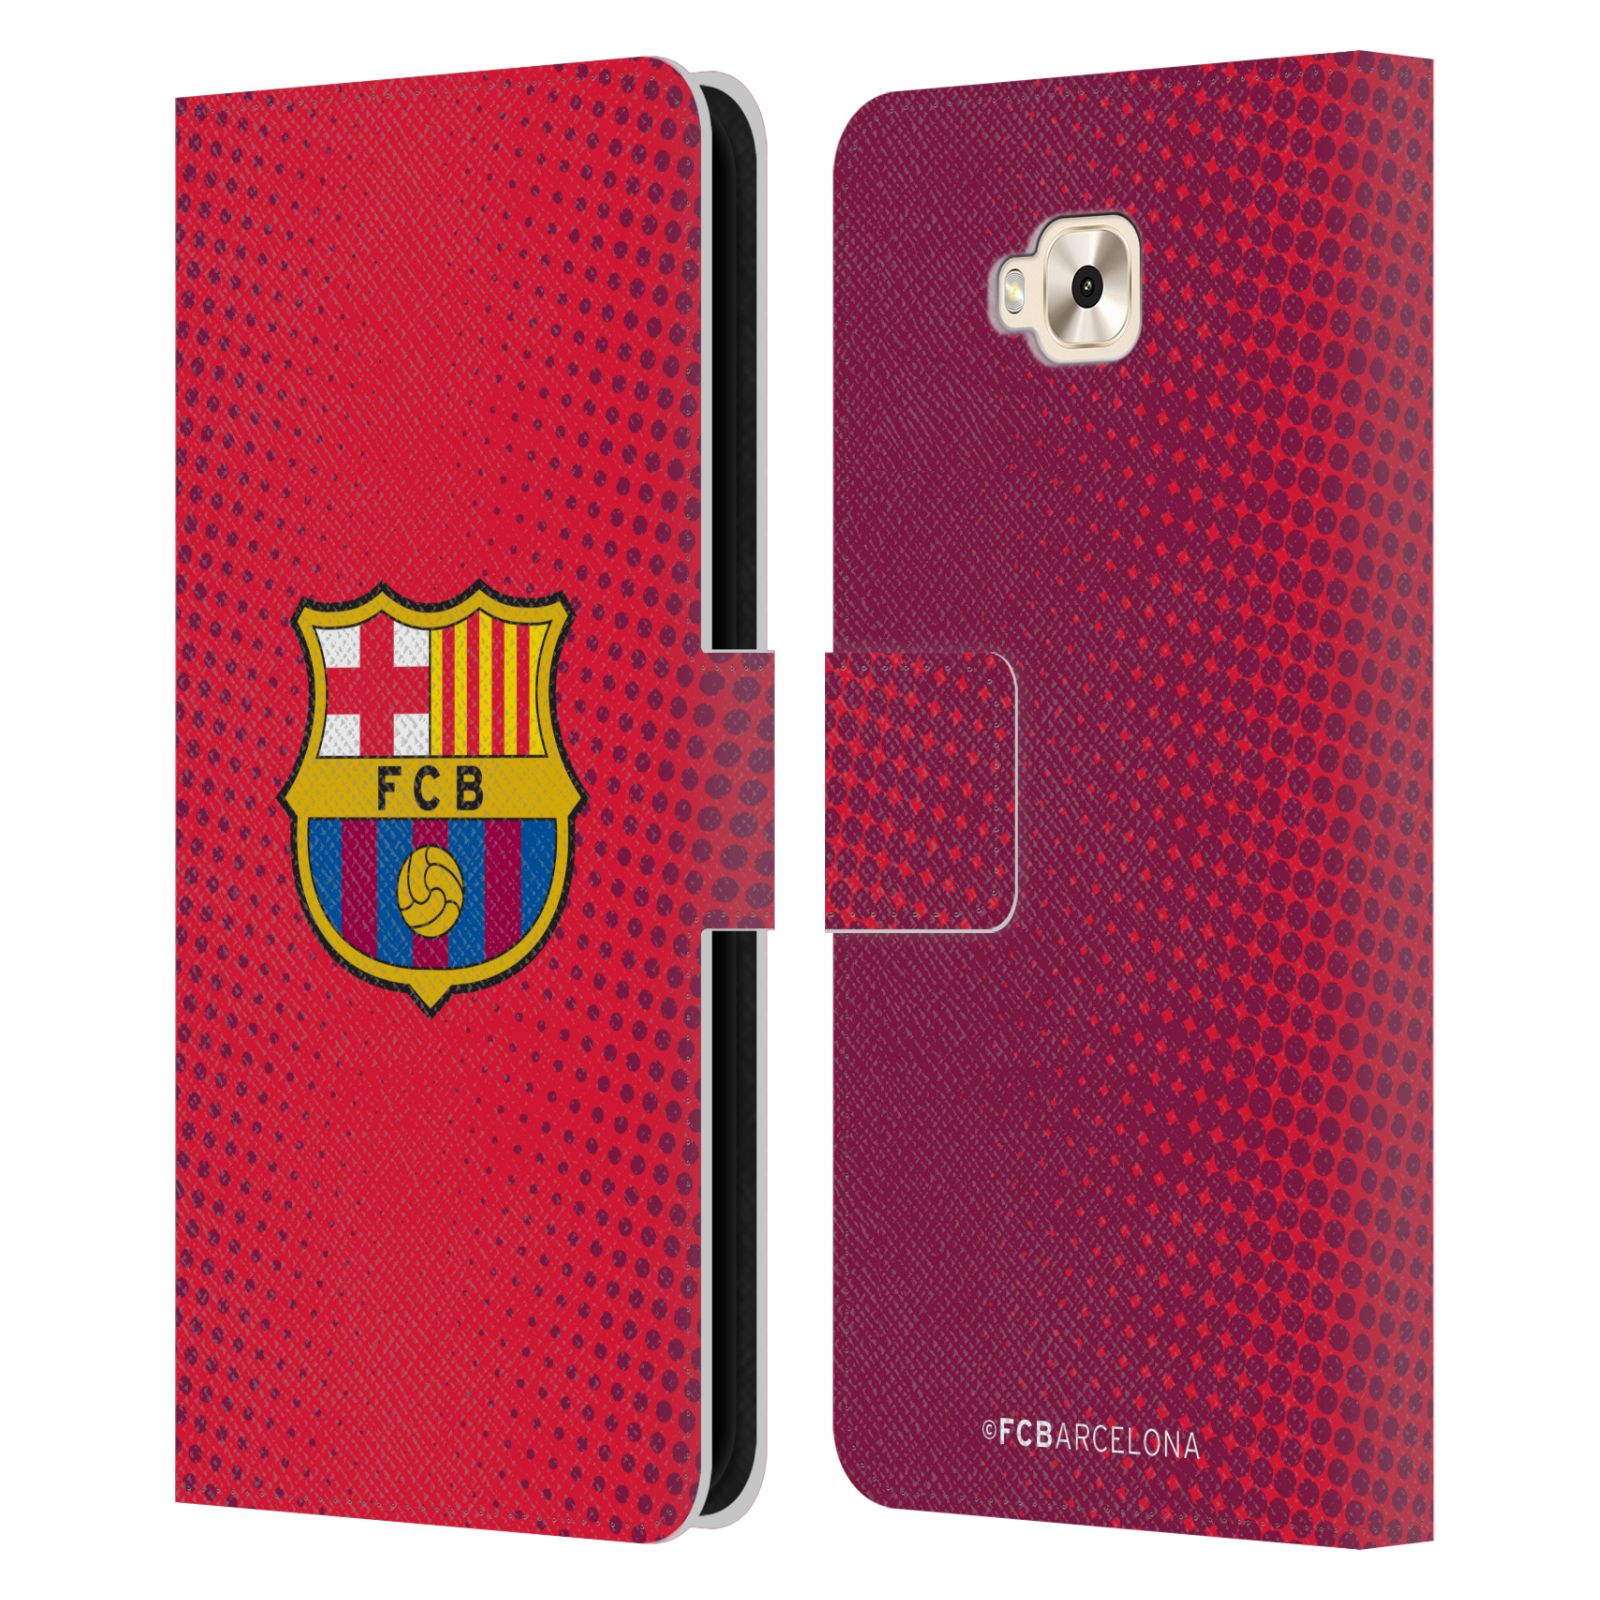 Pouzdro na mobil Asus Zenfone 4 Selfie ZD553KL  - HEAD CASE - FC Barcelona - Tečky červená